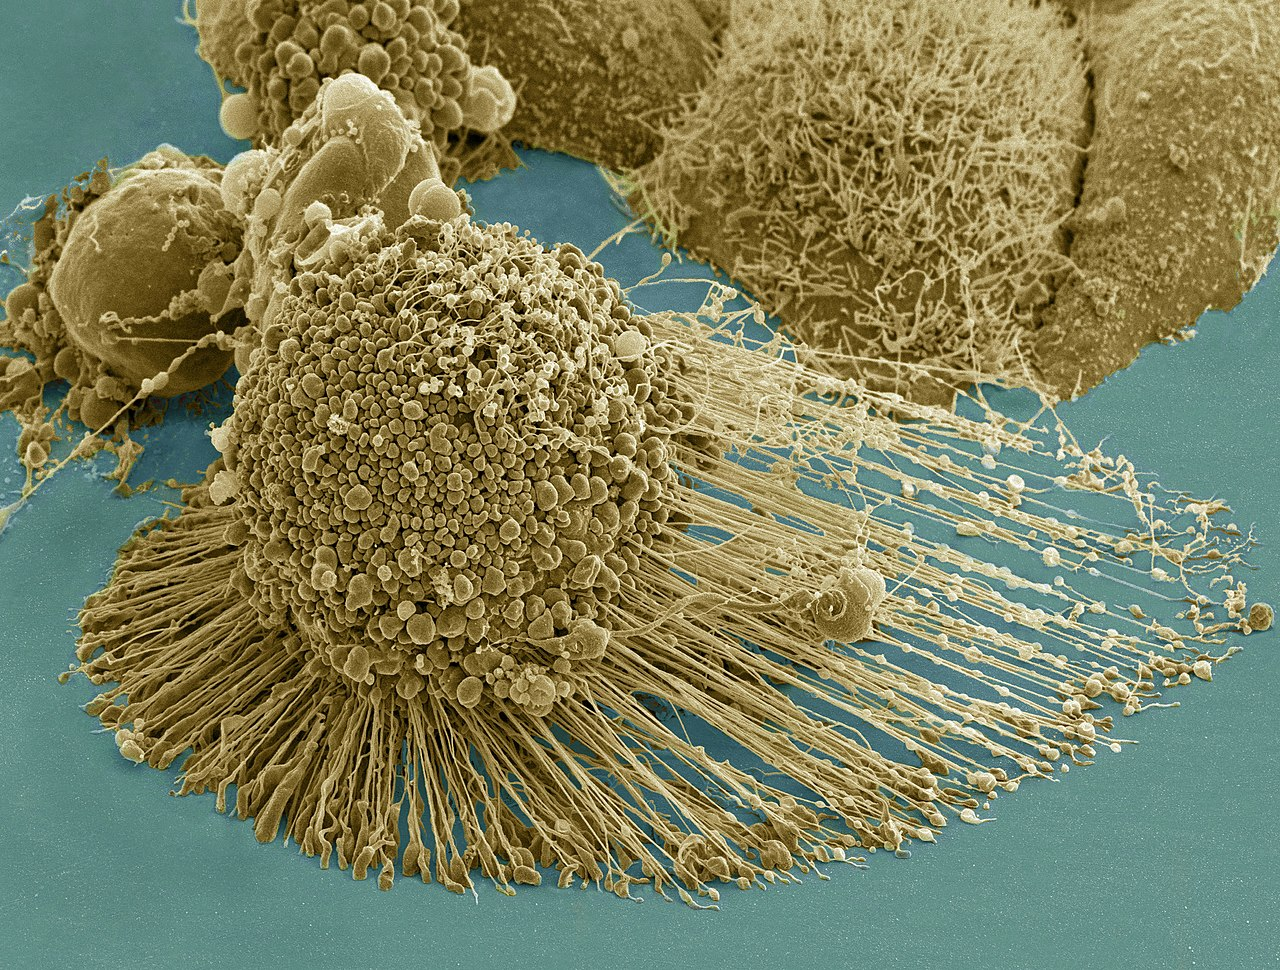 В большинстве видов рака теломераза поддерживает стабильную длину теломер, делая такие клетки потенциально бессмертными. На фото раковые клетки HeLa, выделенные в 1951 году из опухоли шейки матки Генриетты Лакс (Henrietta Lacks). Они живы и до сих пор используются цитологами &mdash; например, с их помощью была разработана вакцина против полиомиелита.